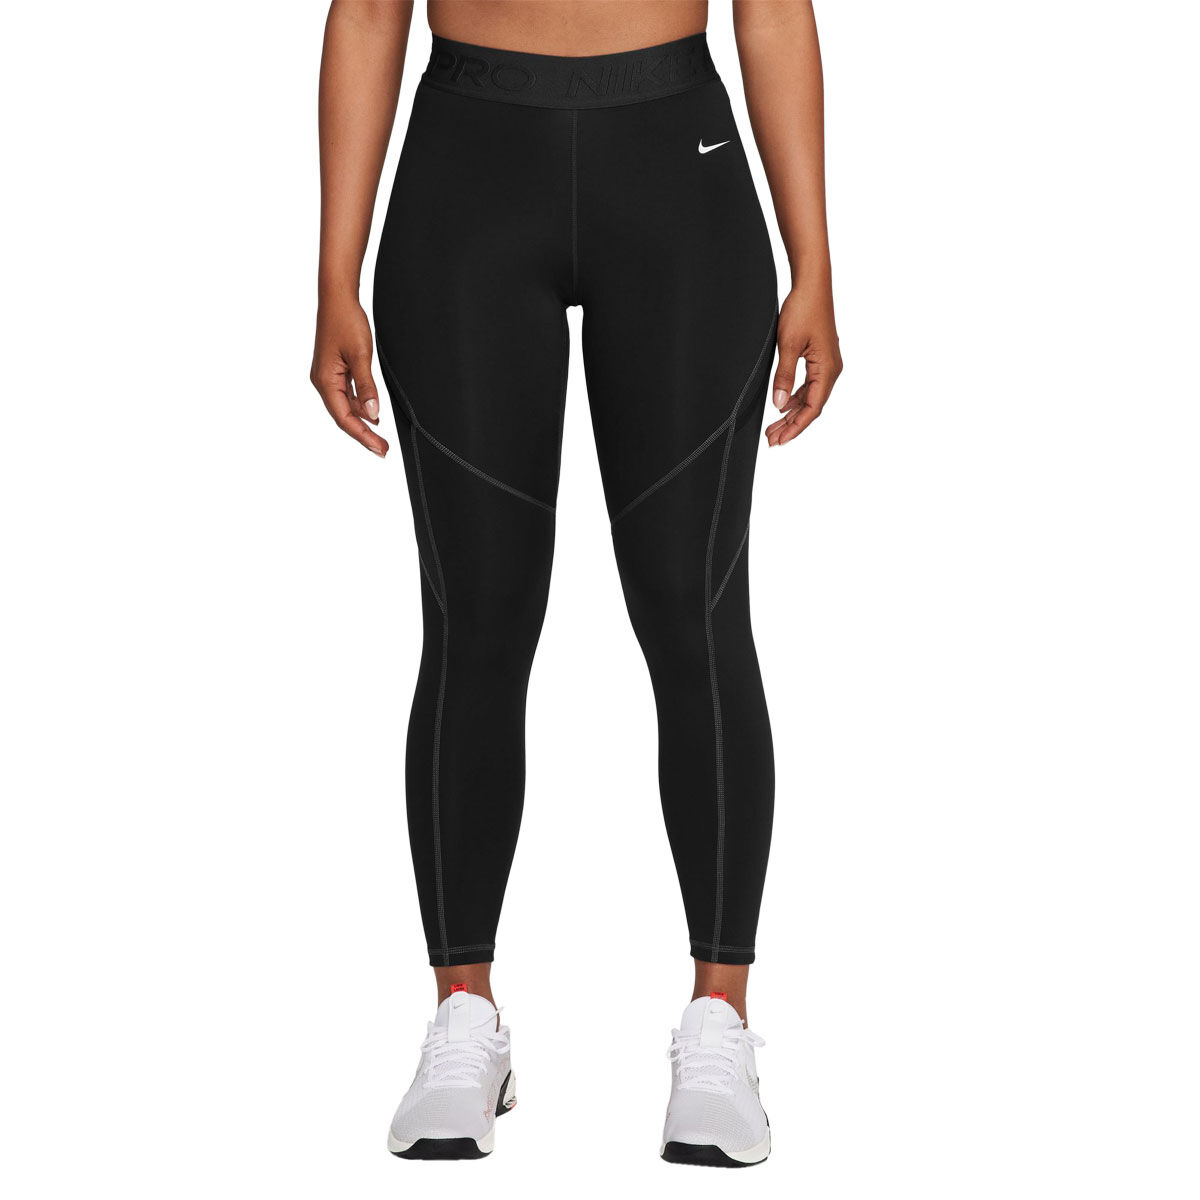 Lids New Orleans Saints Nike Women's 7/8 Performance Leggings - Black/White